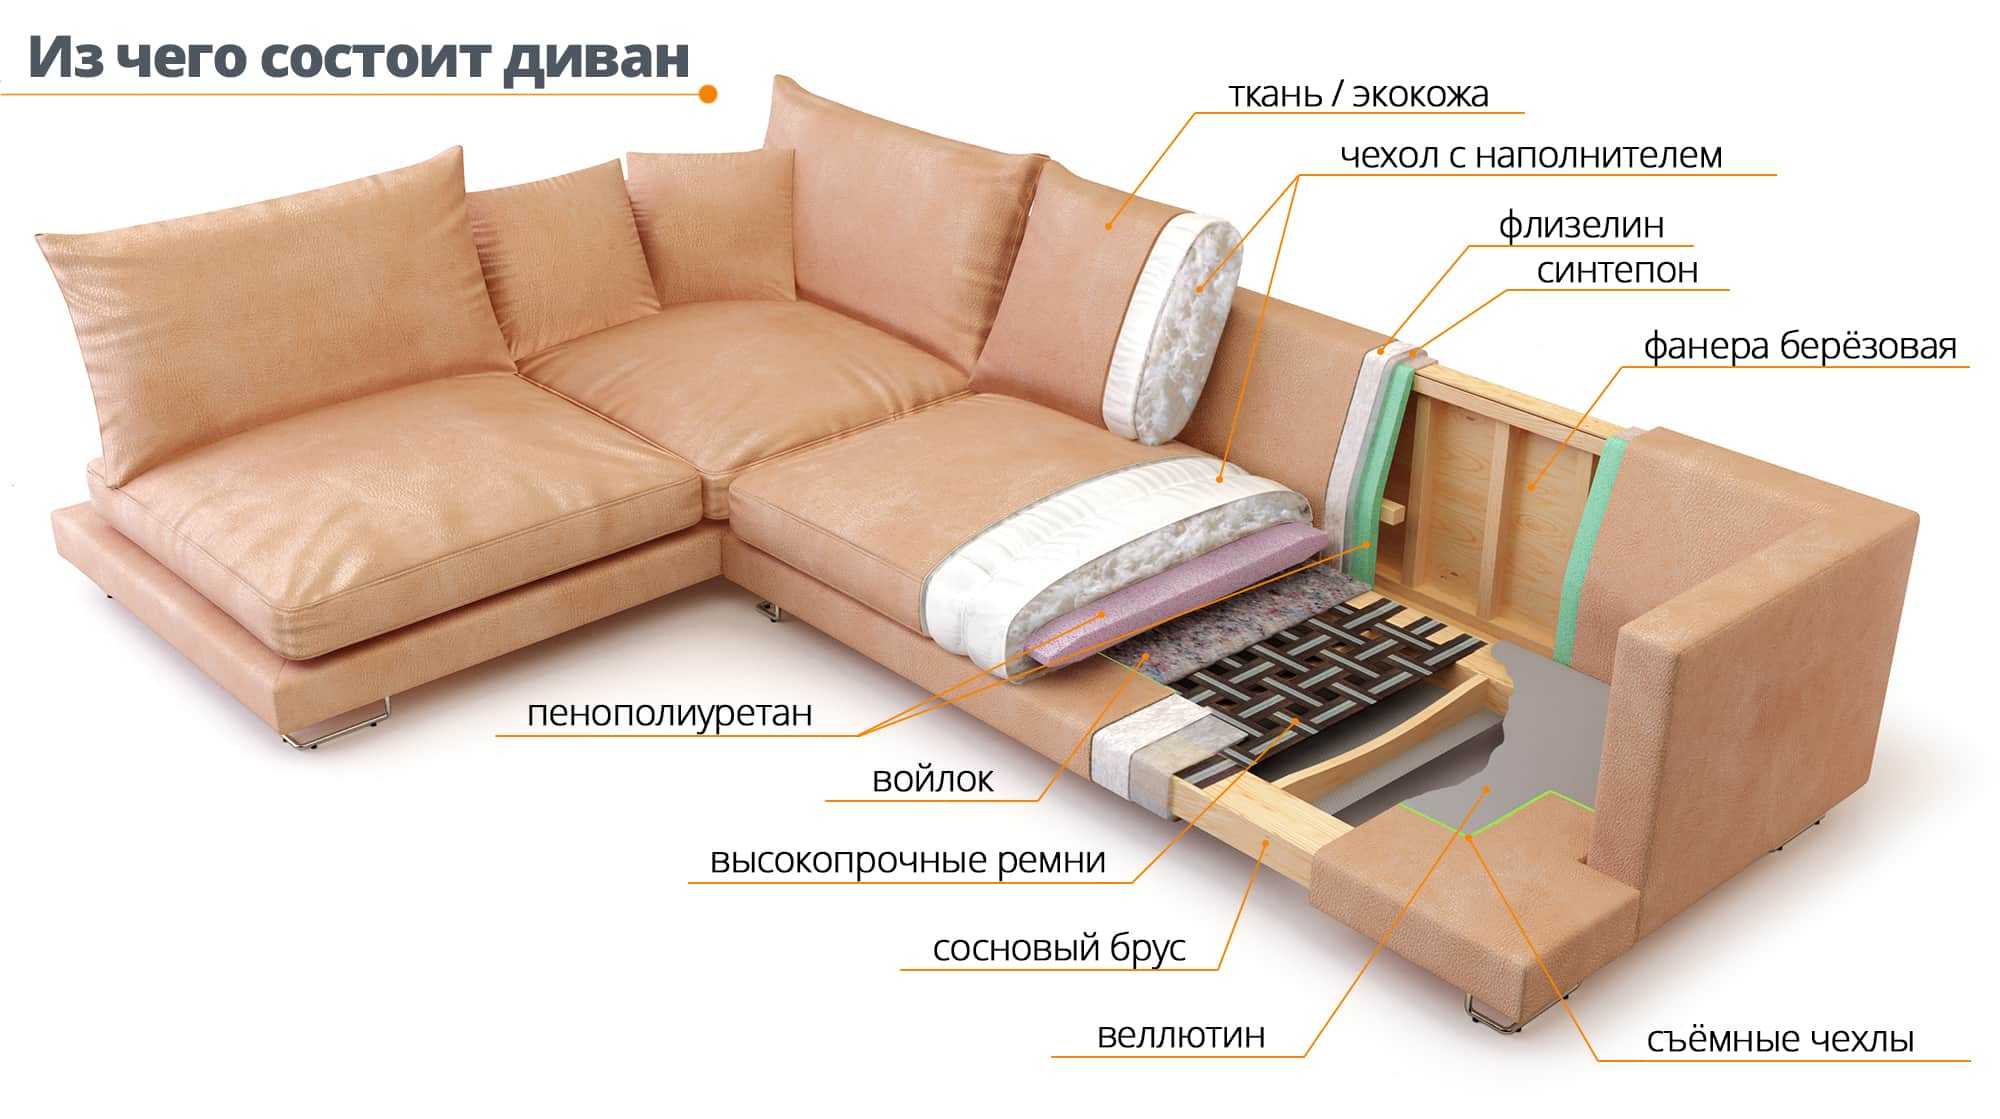 Какой наполнитель лучше для дивана: пружинный блок или пенополиуретан?